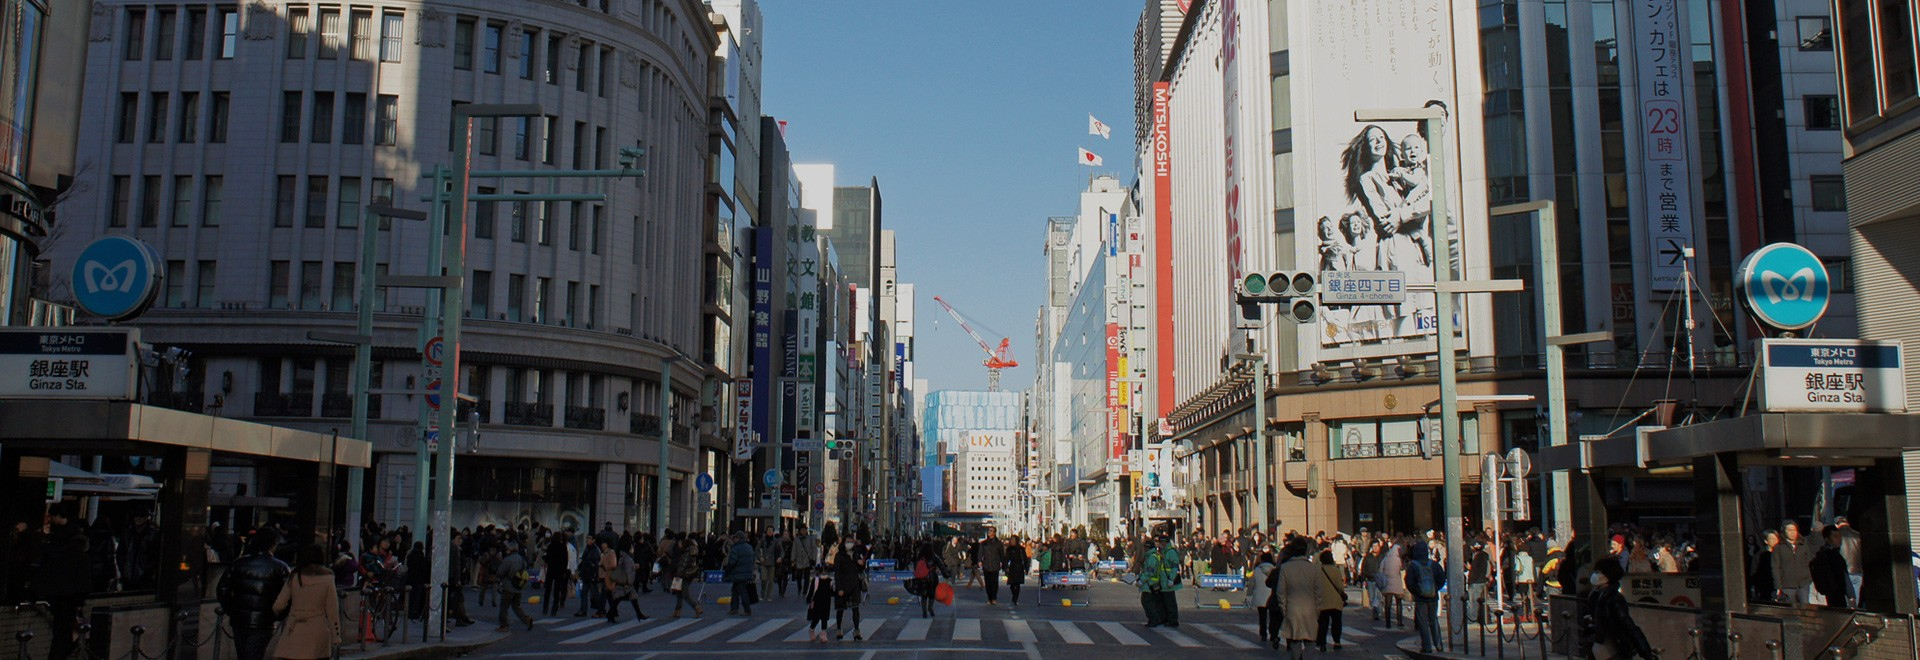 日本首屈一指的高级地段 一 一 银座 ～散发洗链成熟气息的街道～